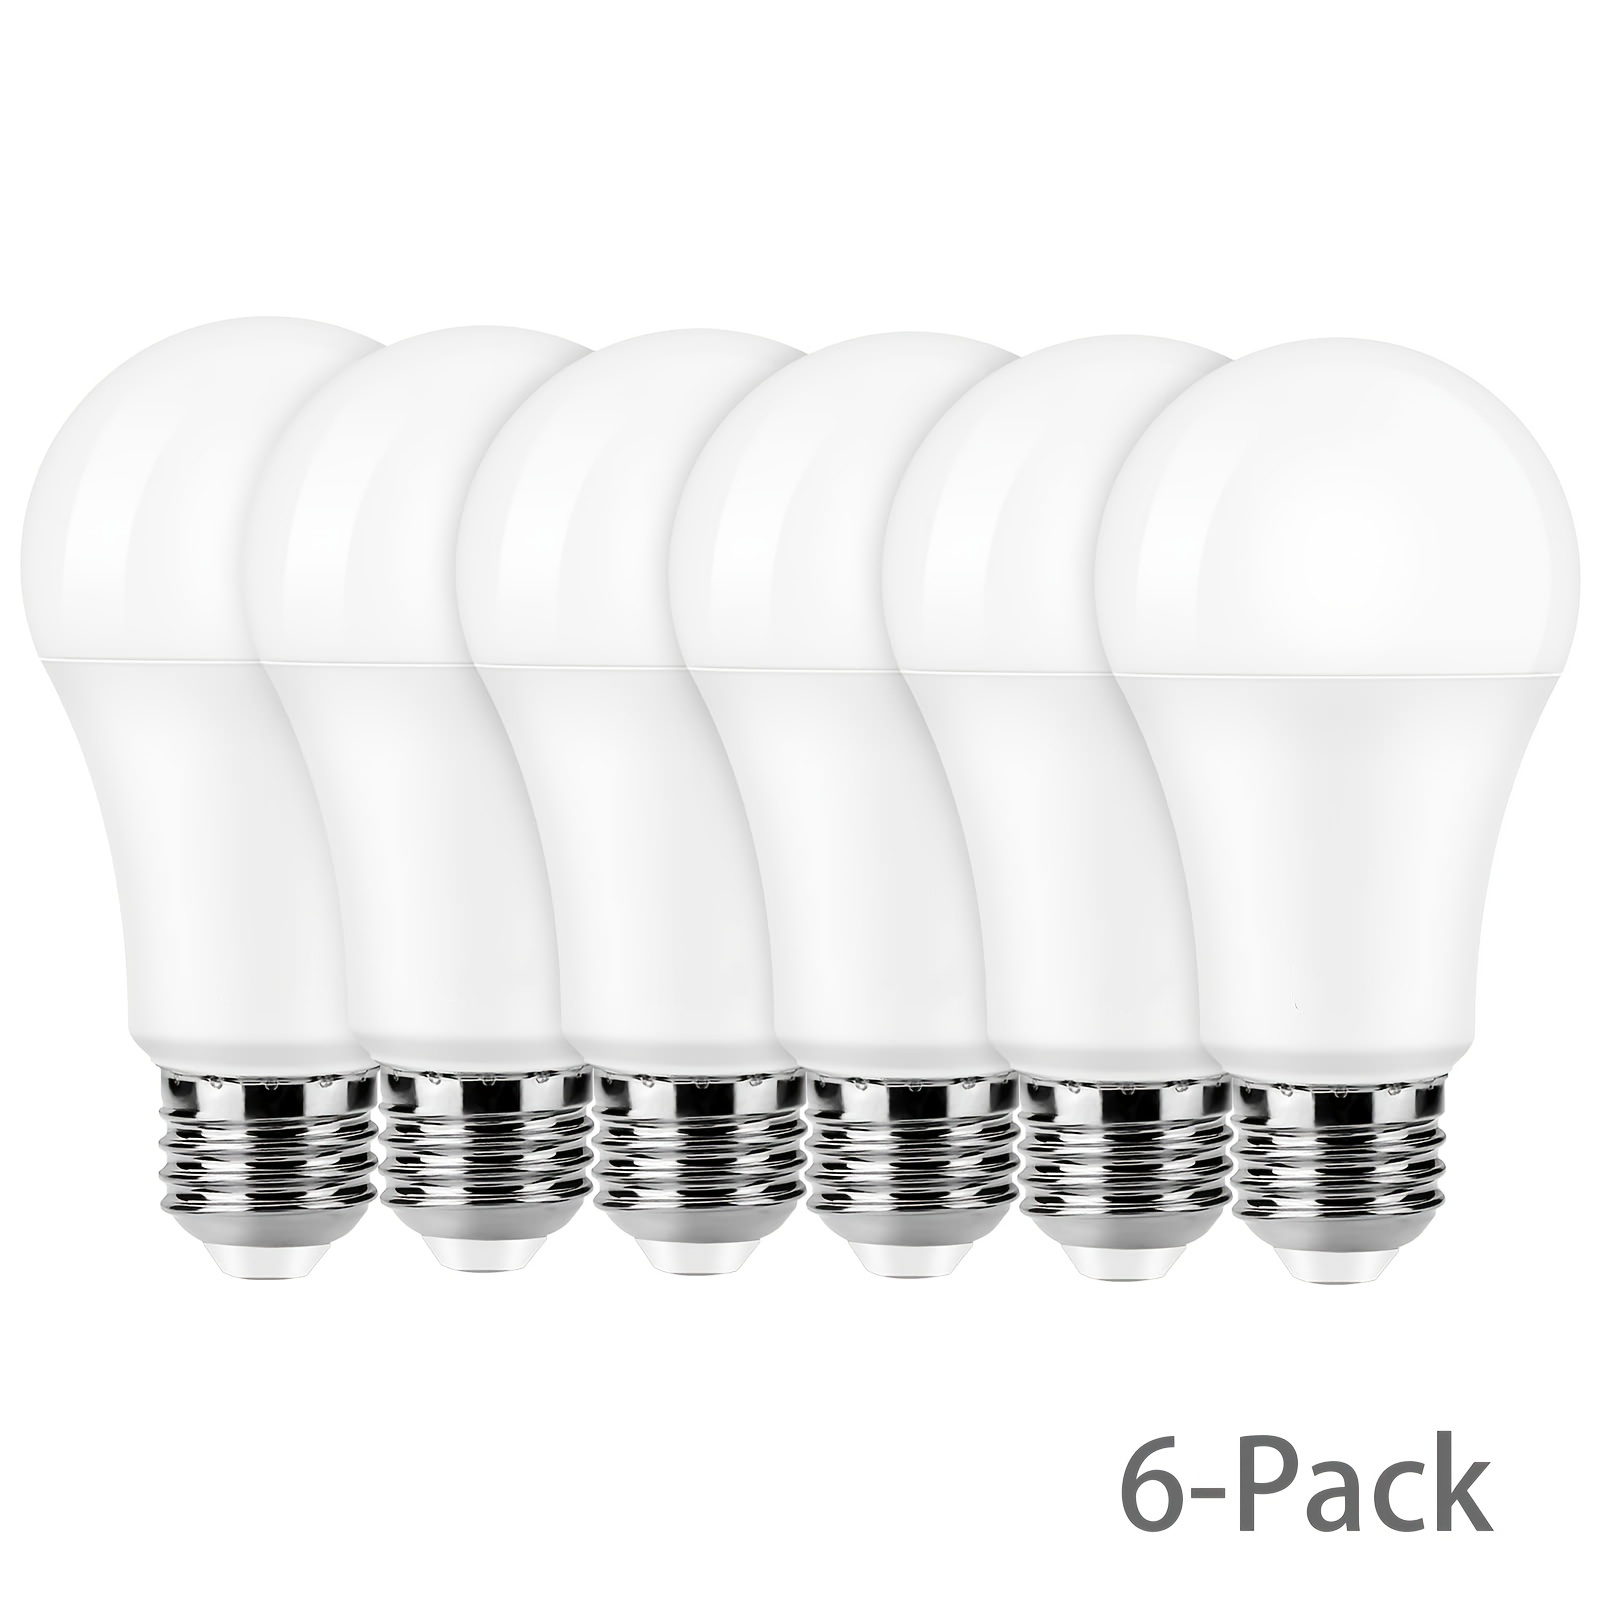 3 AmpouleS LED G9 5W, Équivalent 50W Ampoules Halogènes, Blanc froid 6500K